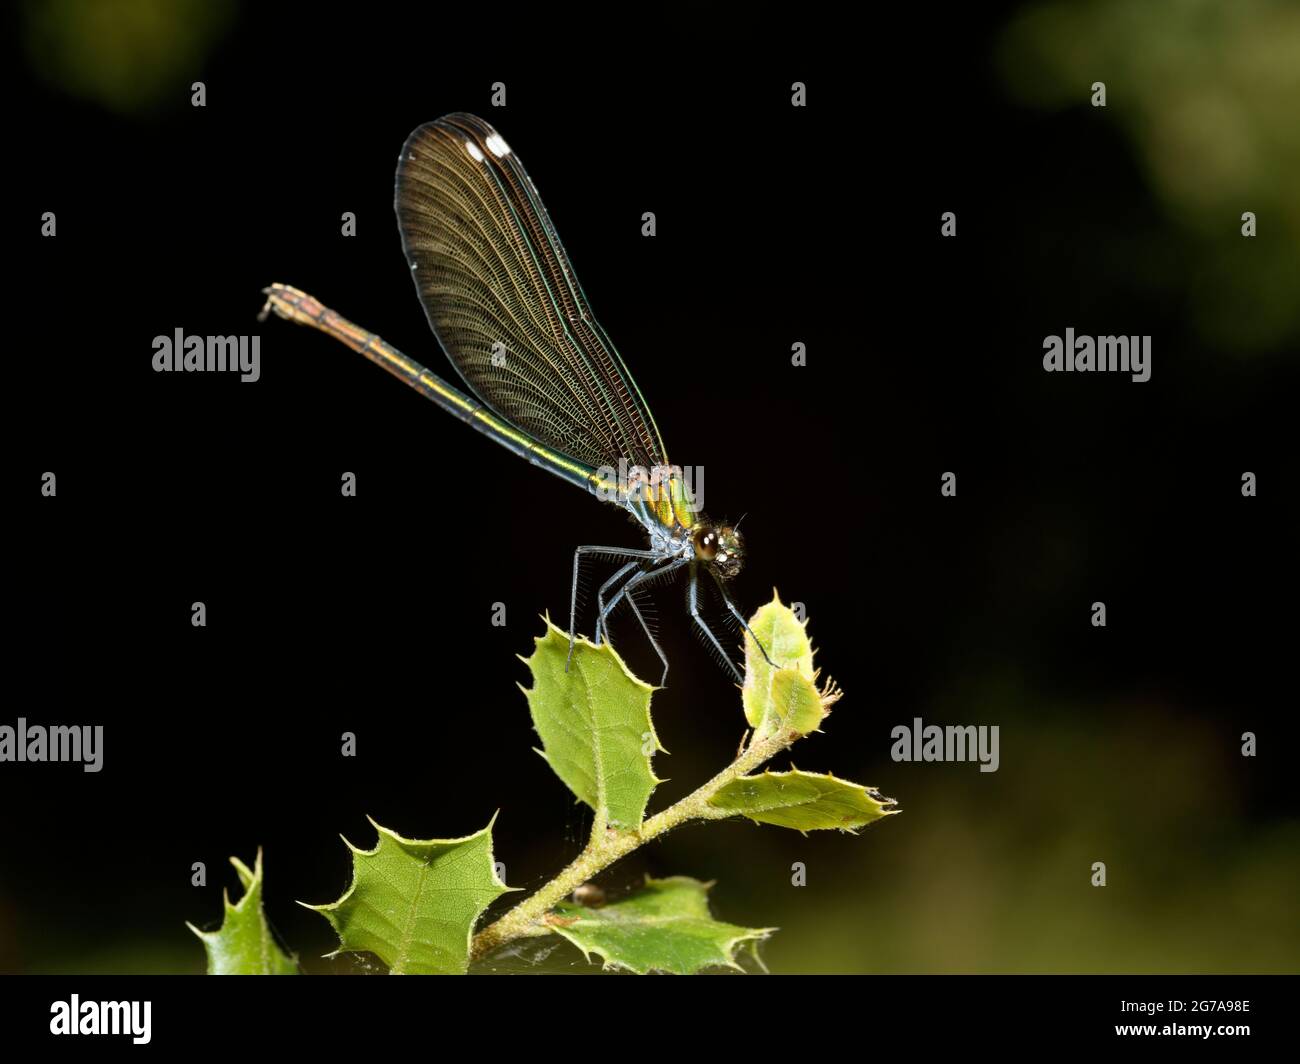 Weibchen schöne Demoiselle (Calopteryx virgo) im Profil gesehen, auf einem Blatt angesiedelt Stockfoto